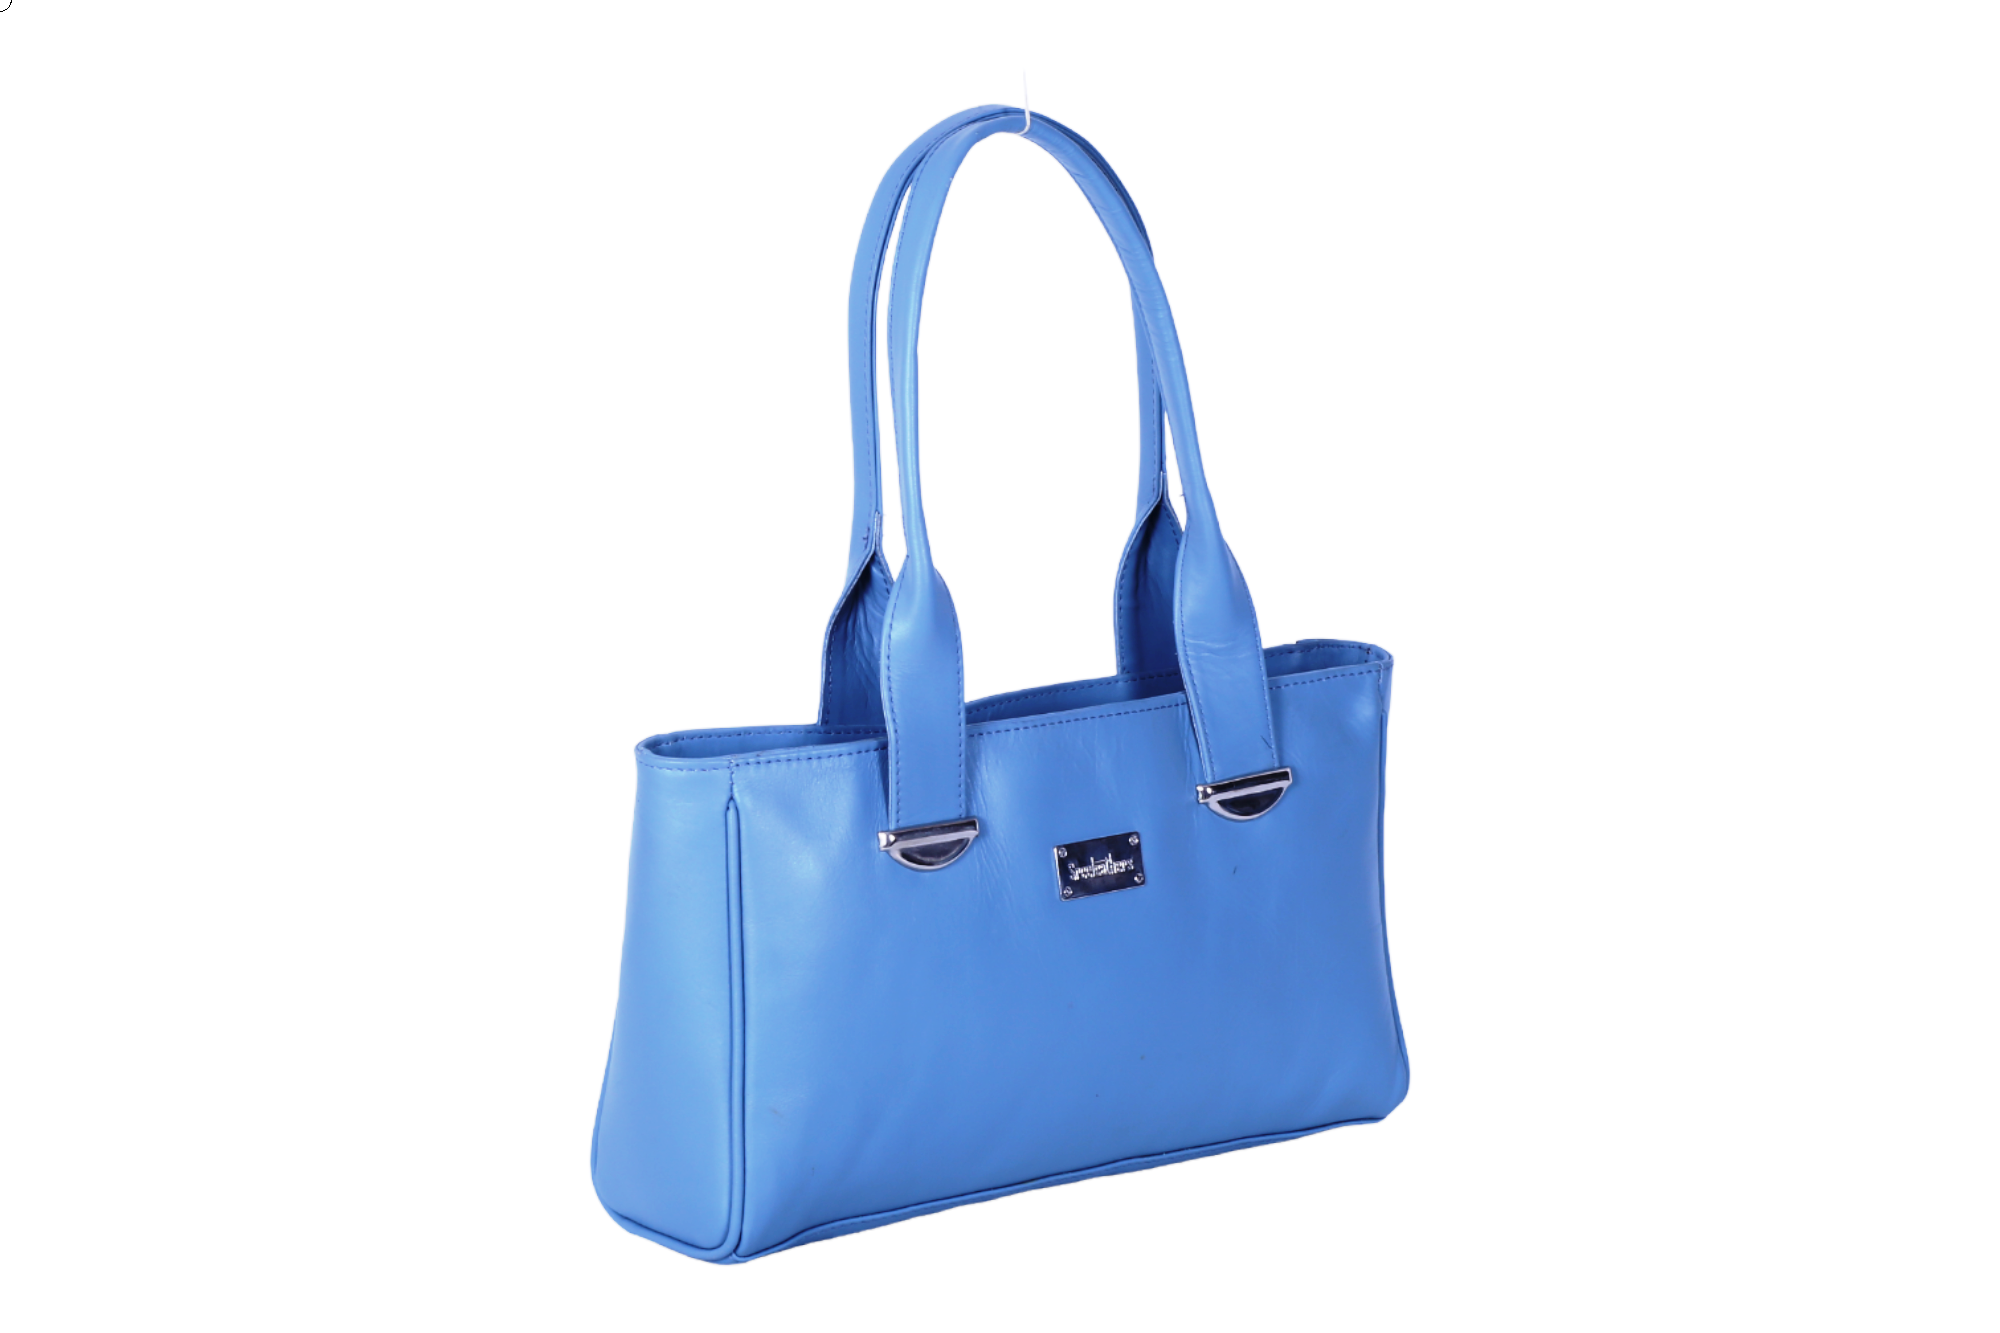 Buy Richborn Variety Vanity Bags at Best Price